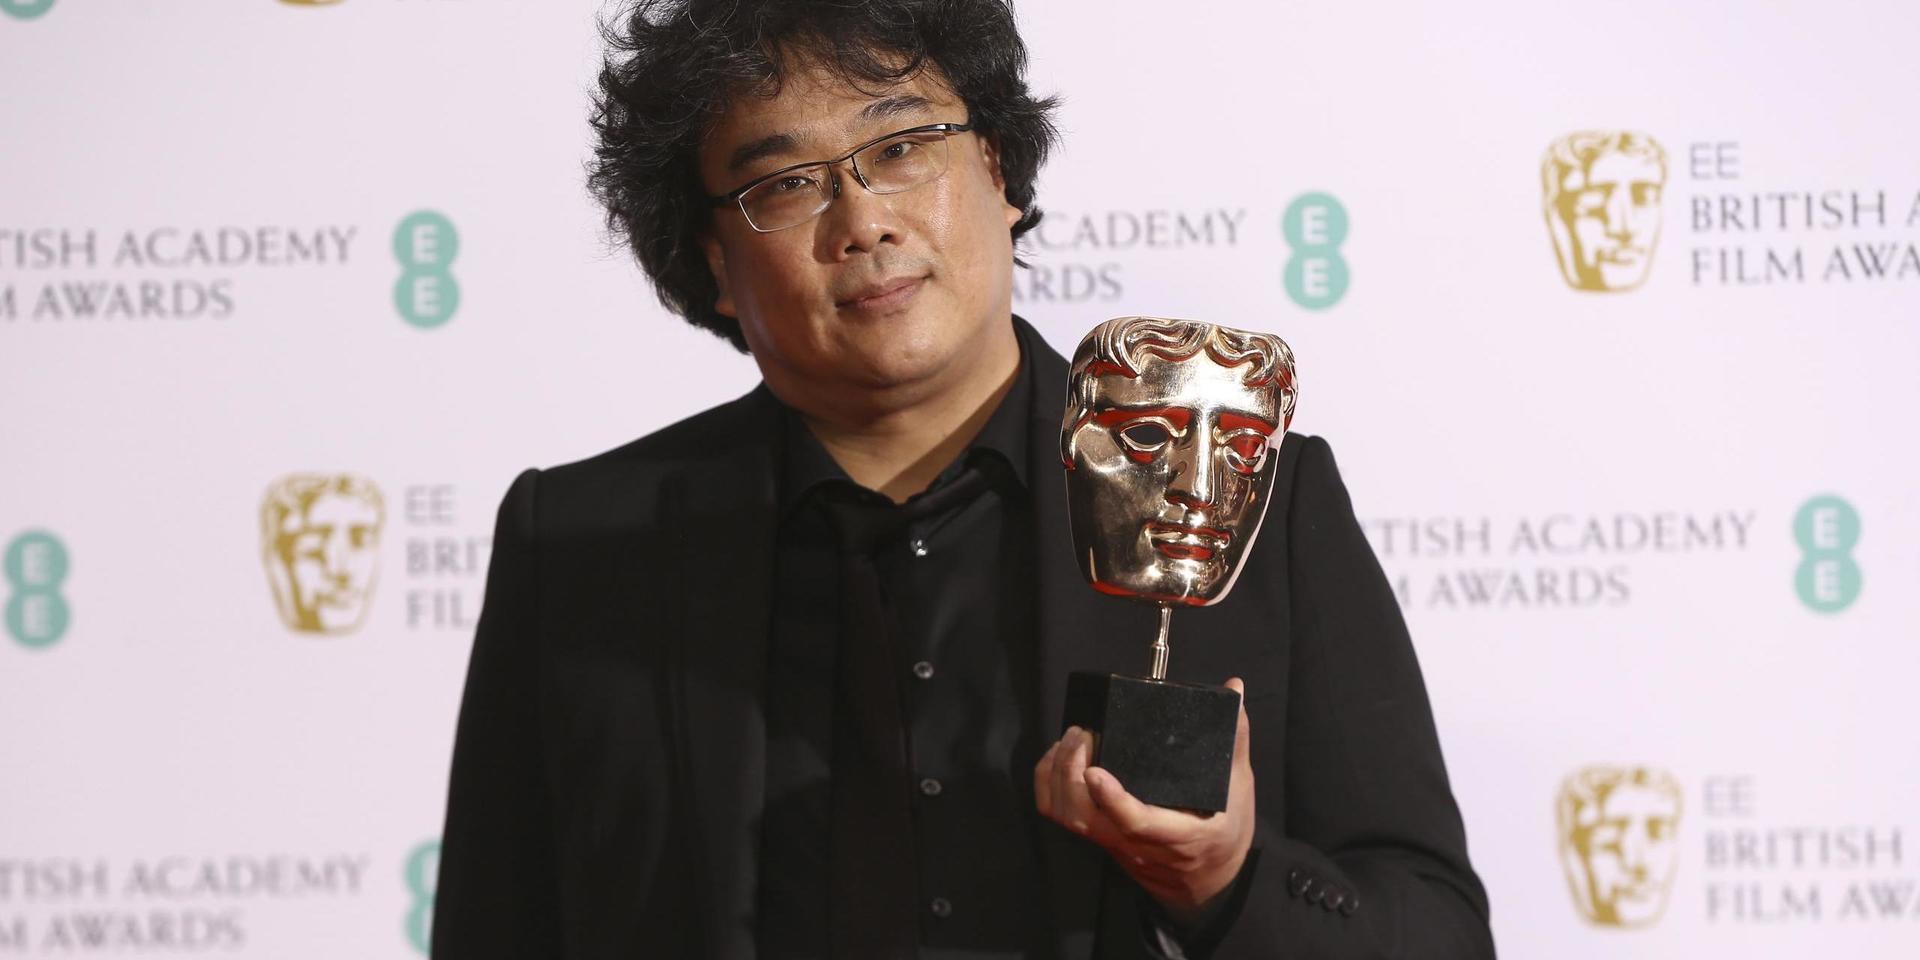 Regissören Bong Joon Ho var den enda icke-vite som nominerades för bästa regi vid årets gala, för 'parasit'. Det priset fick han inte, men väl två statyetter för bästa utländska film och bästa manus. 